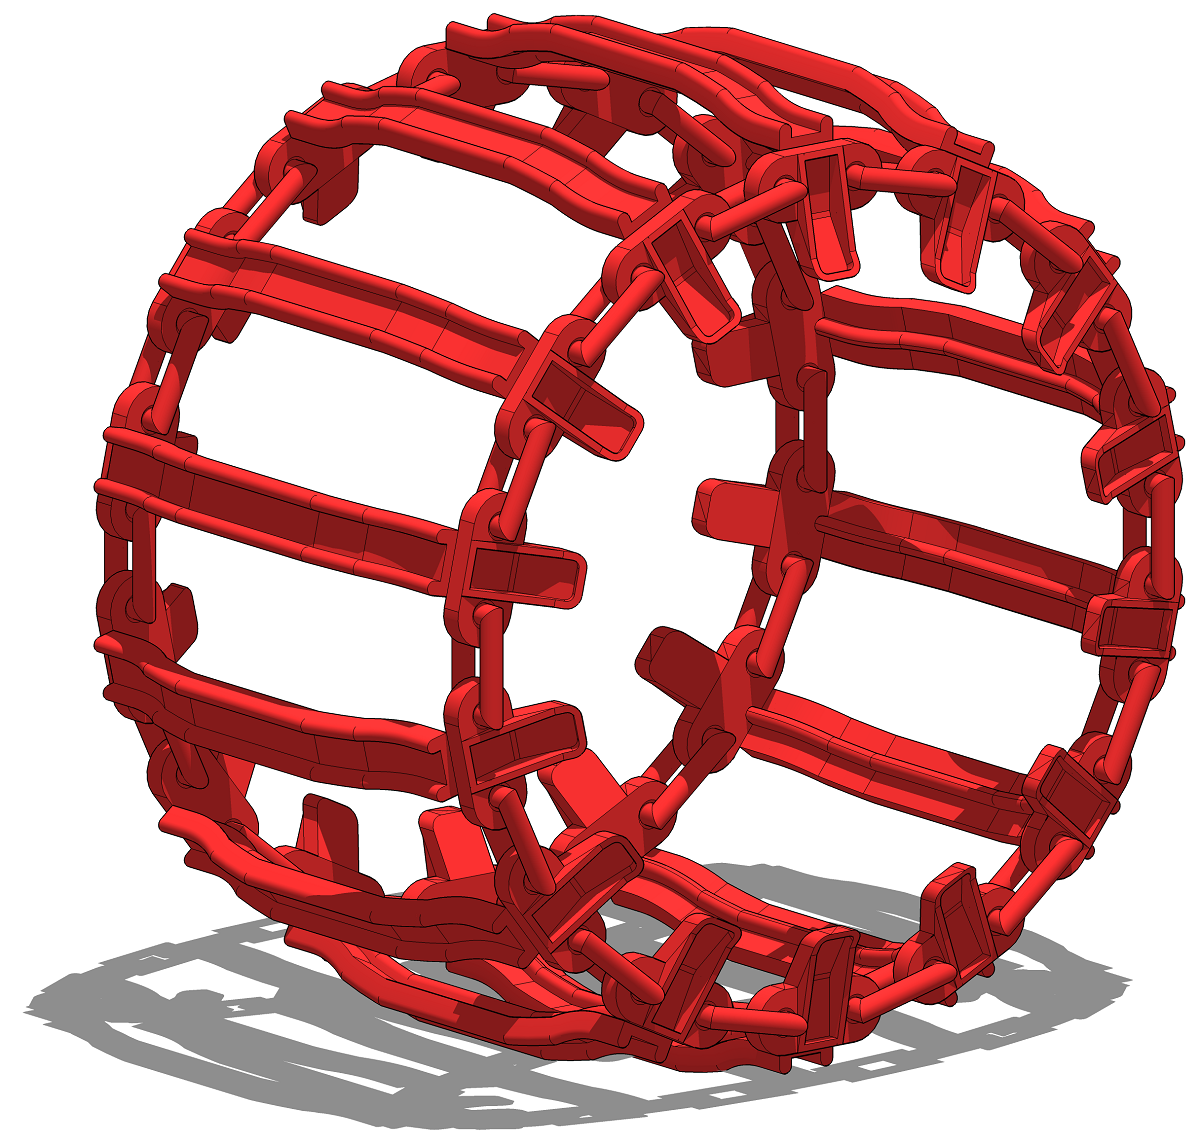 3D визуализация моно-гусеницы на колеса для харвестеров и форвардеров